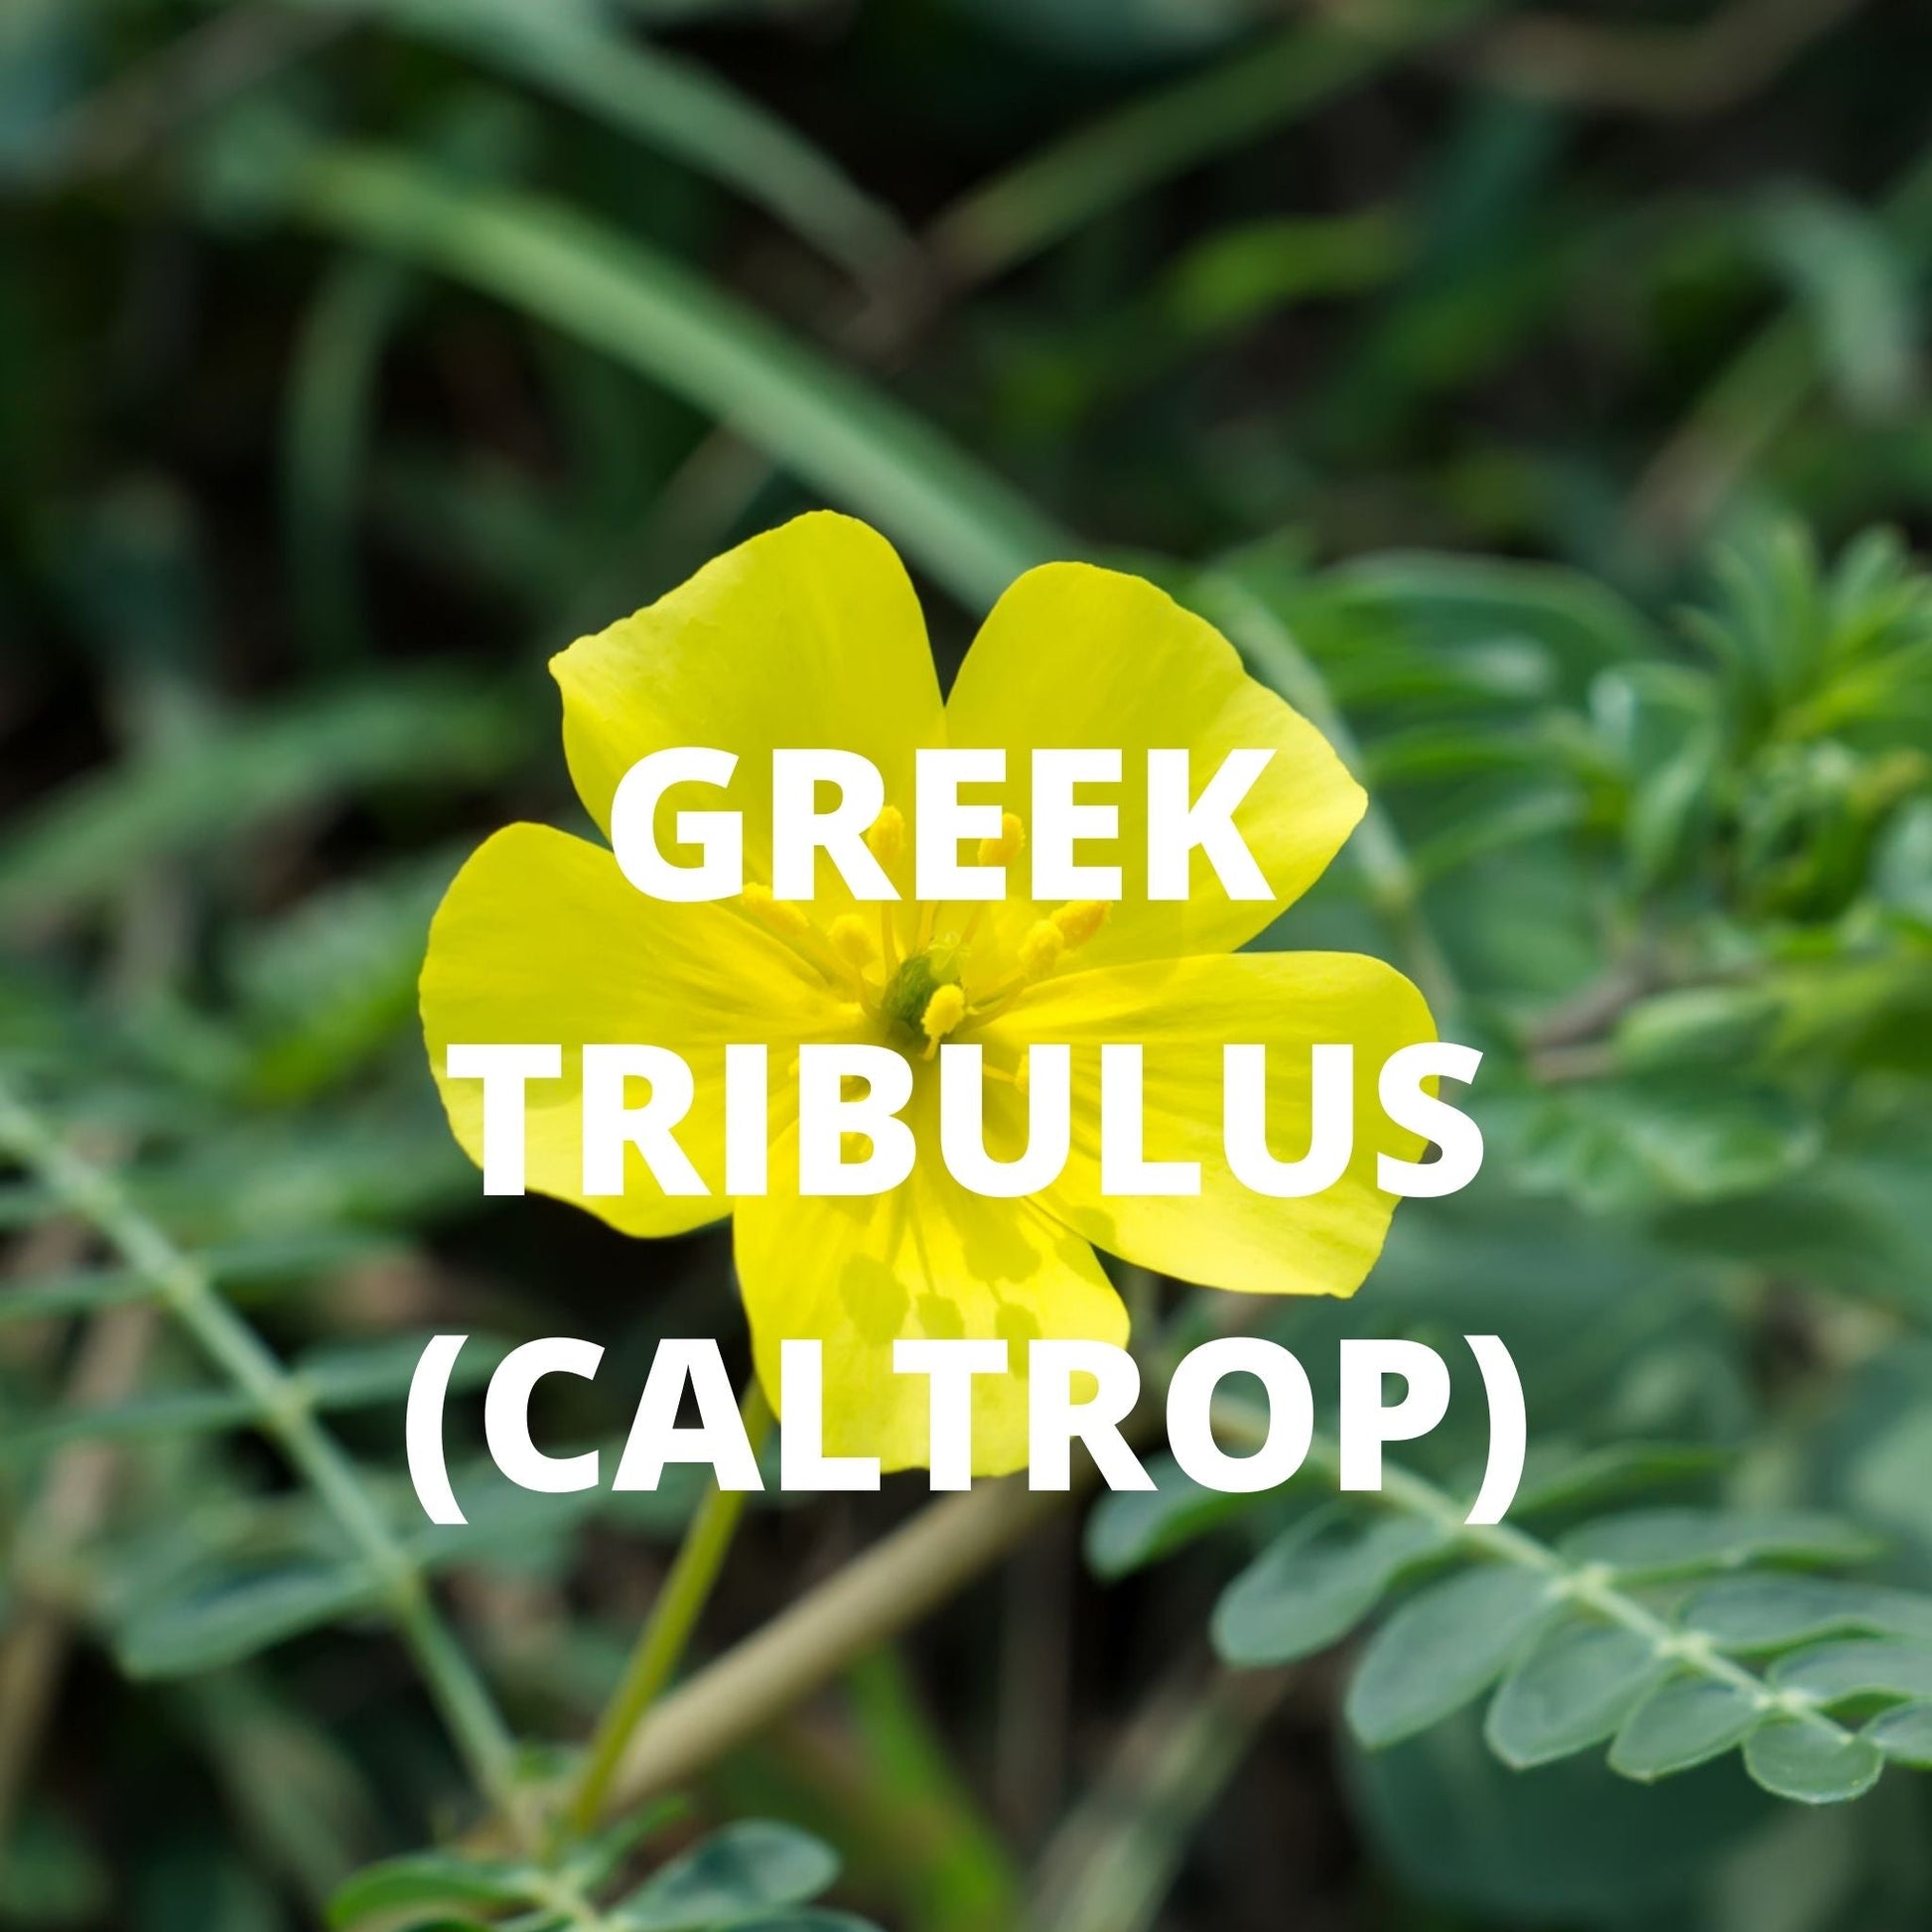 Greek tribulus